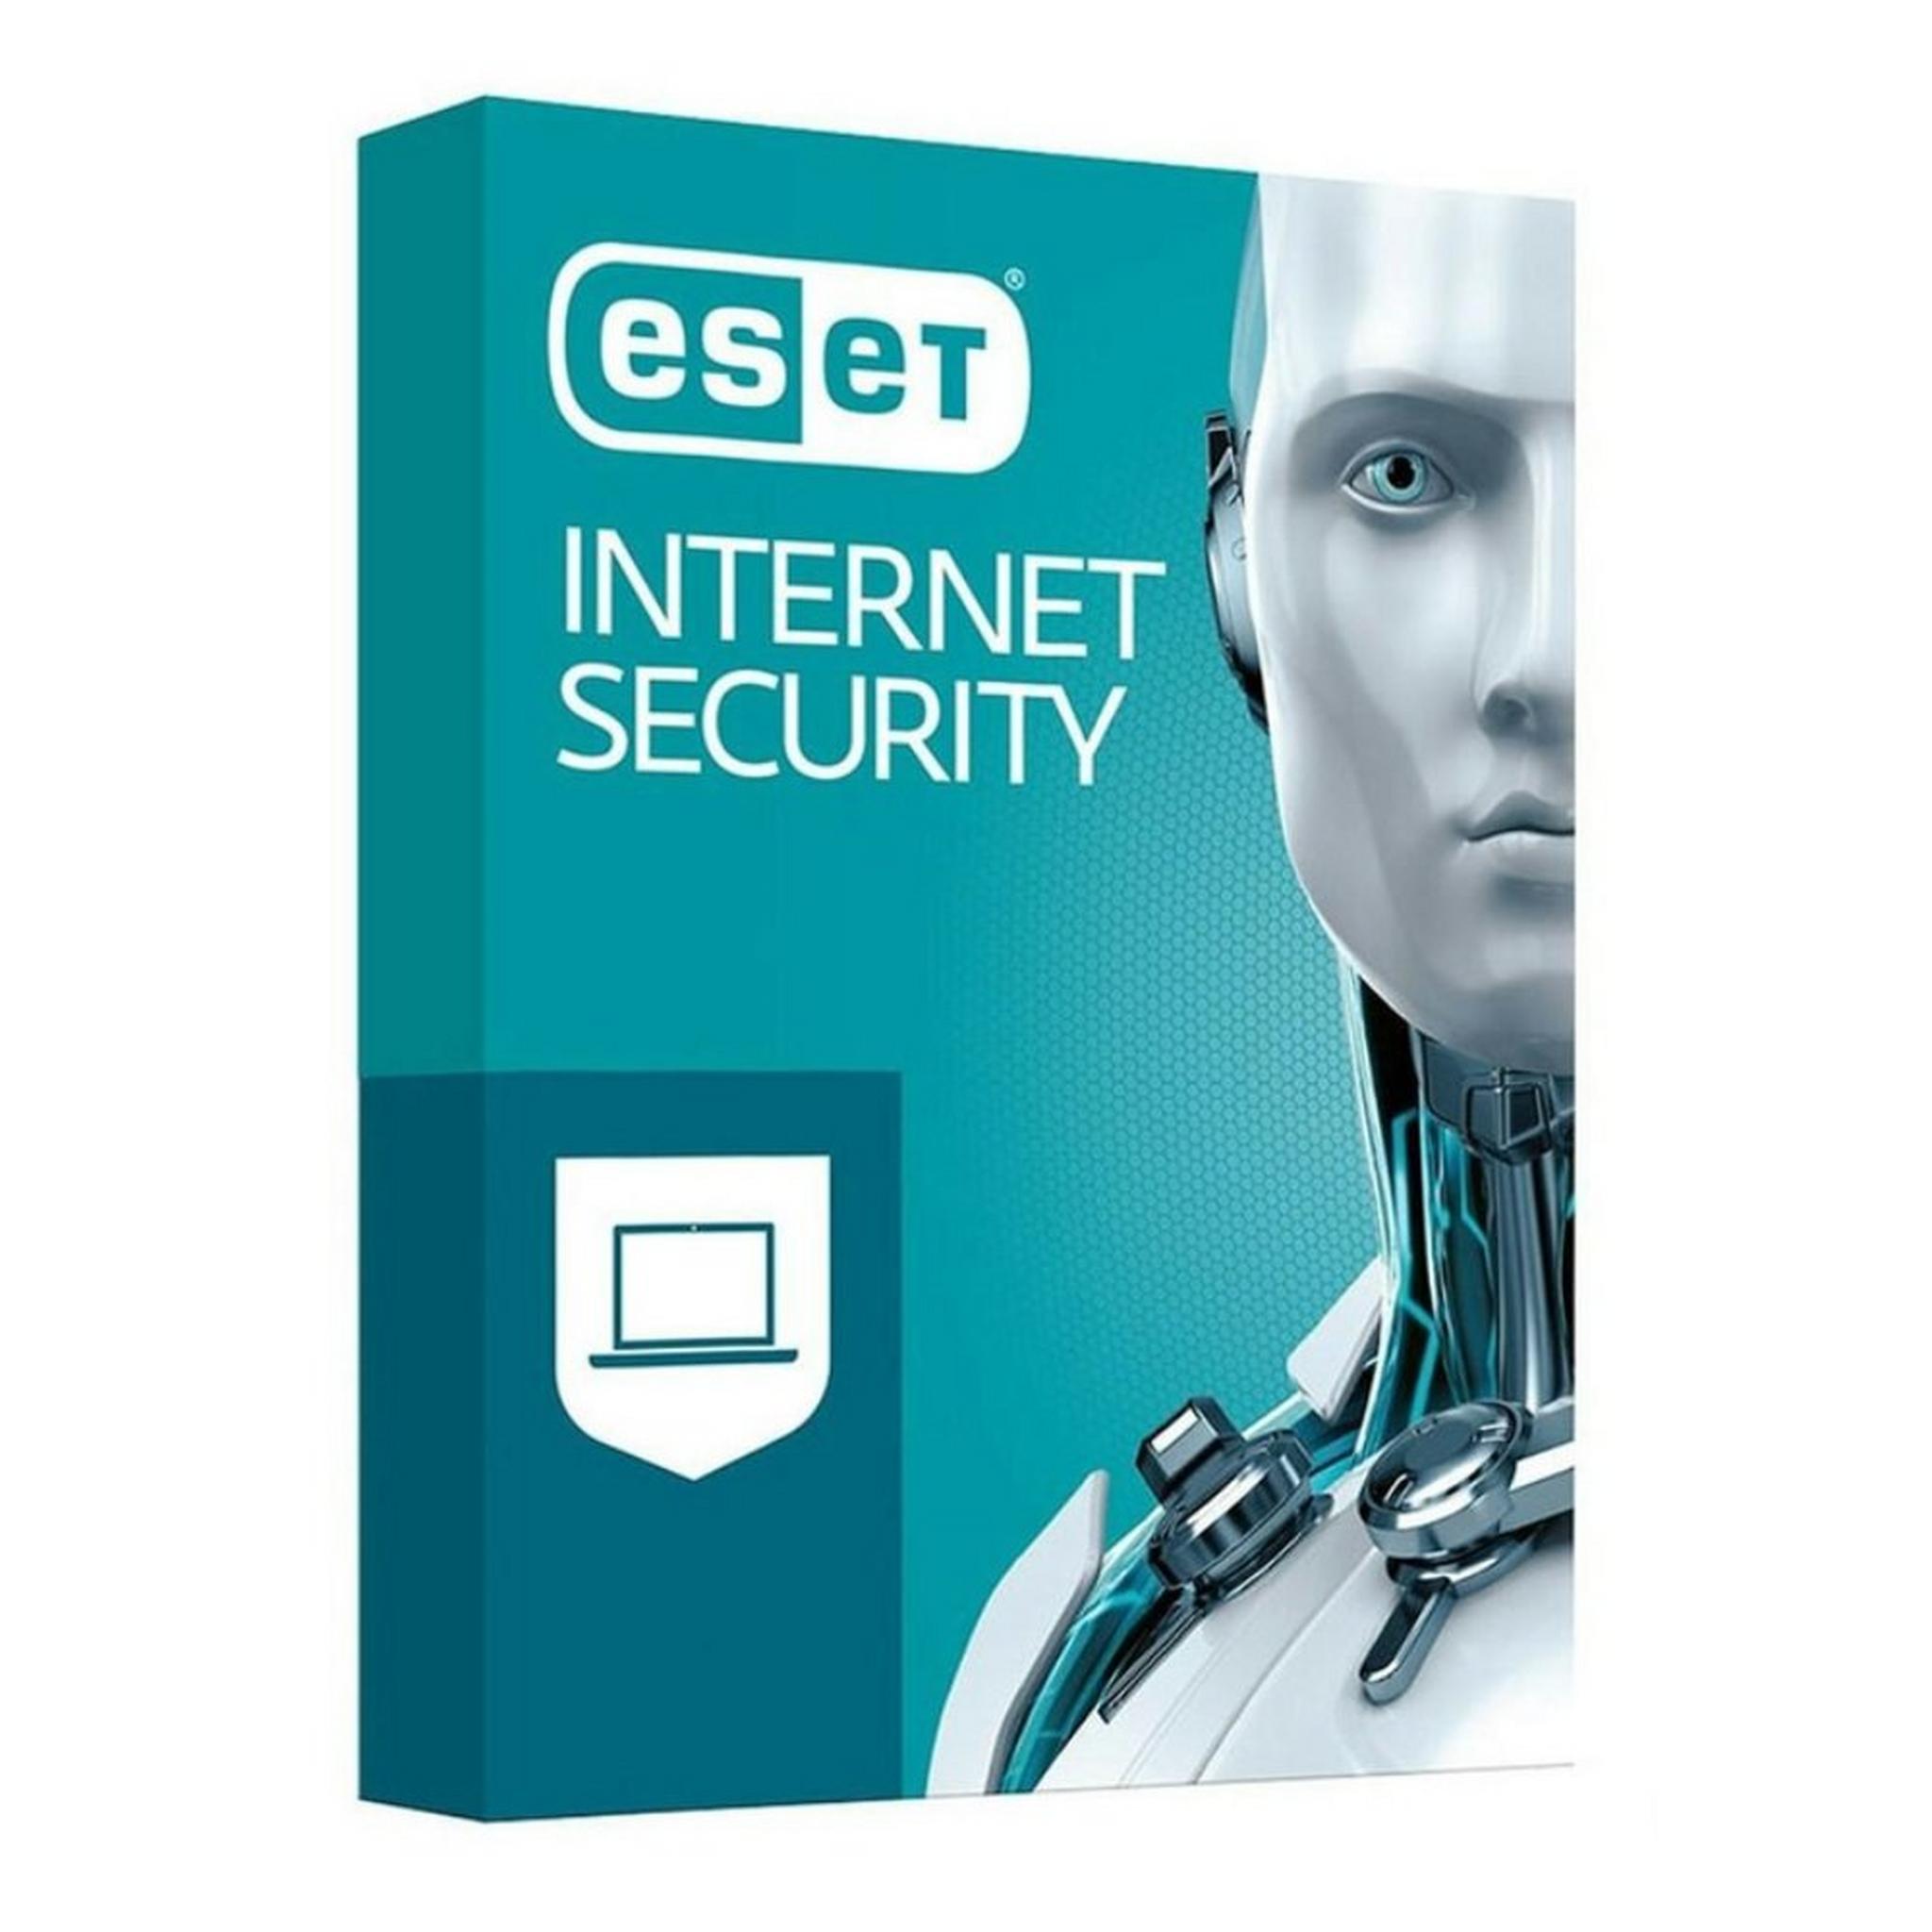 برنامج حماية الانترنت من ايست - 4 مستخدمين